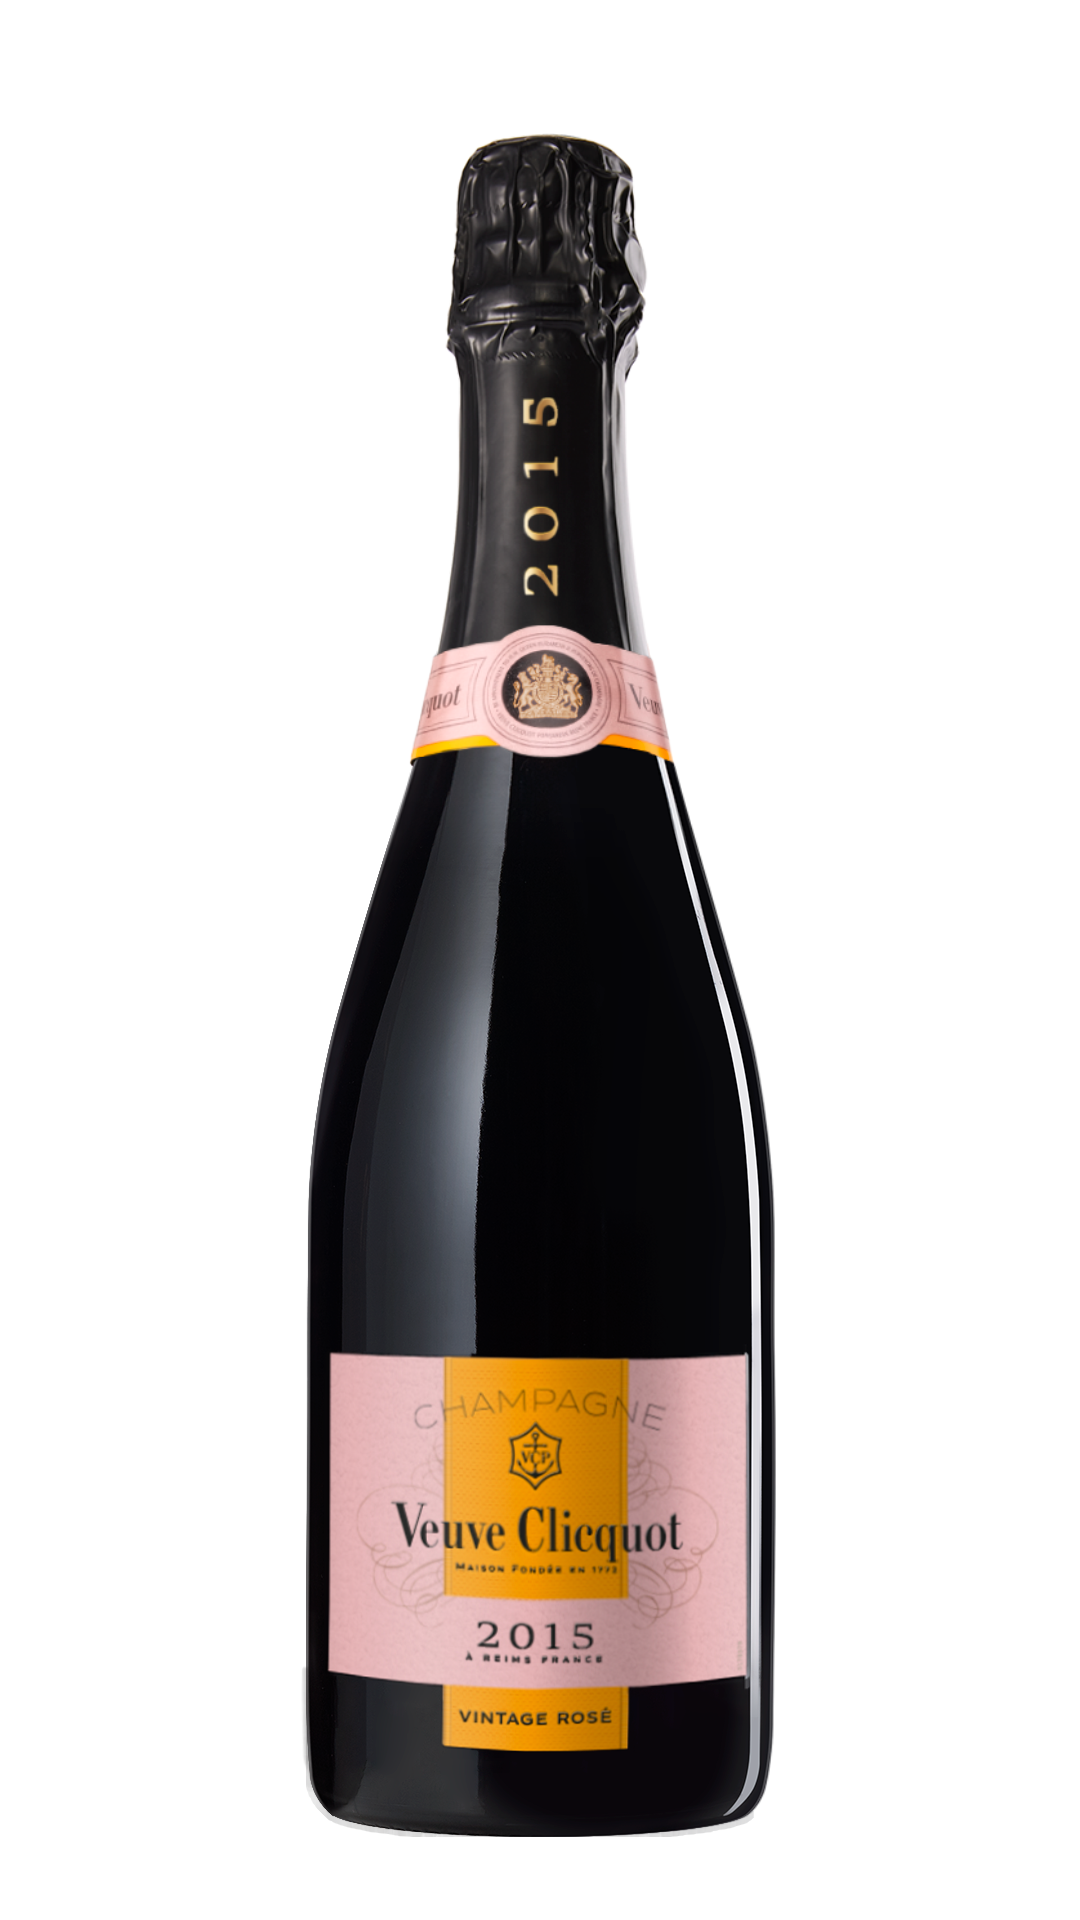 Veuve Clicquot Ponsardin Veuve Clicquot Vintage Rosé 2015 (0,75l)